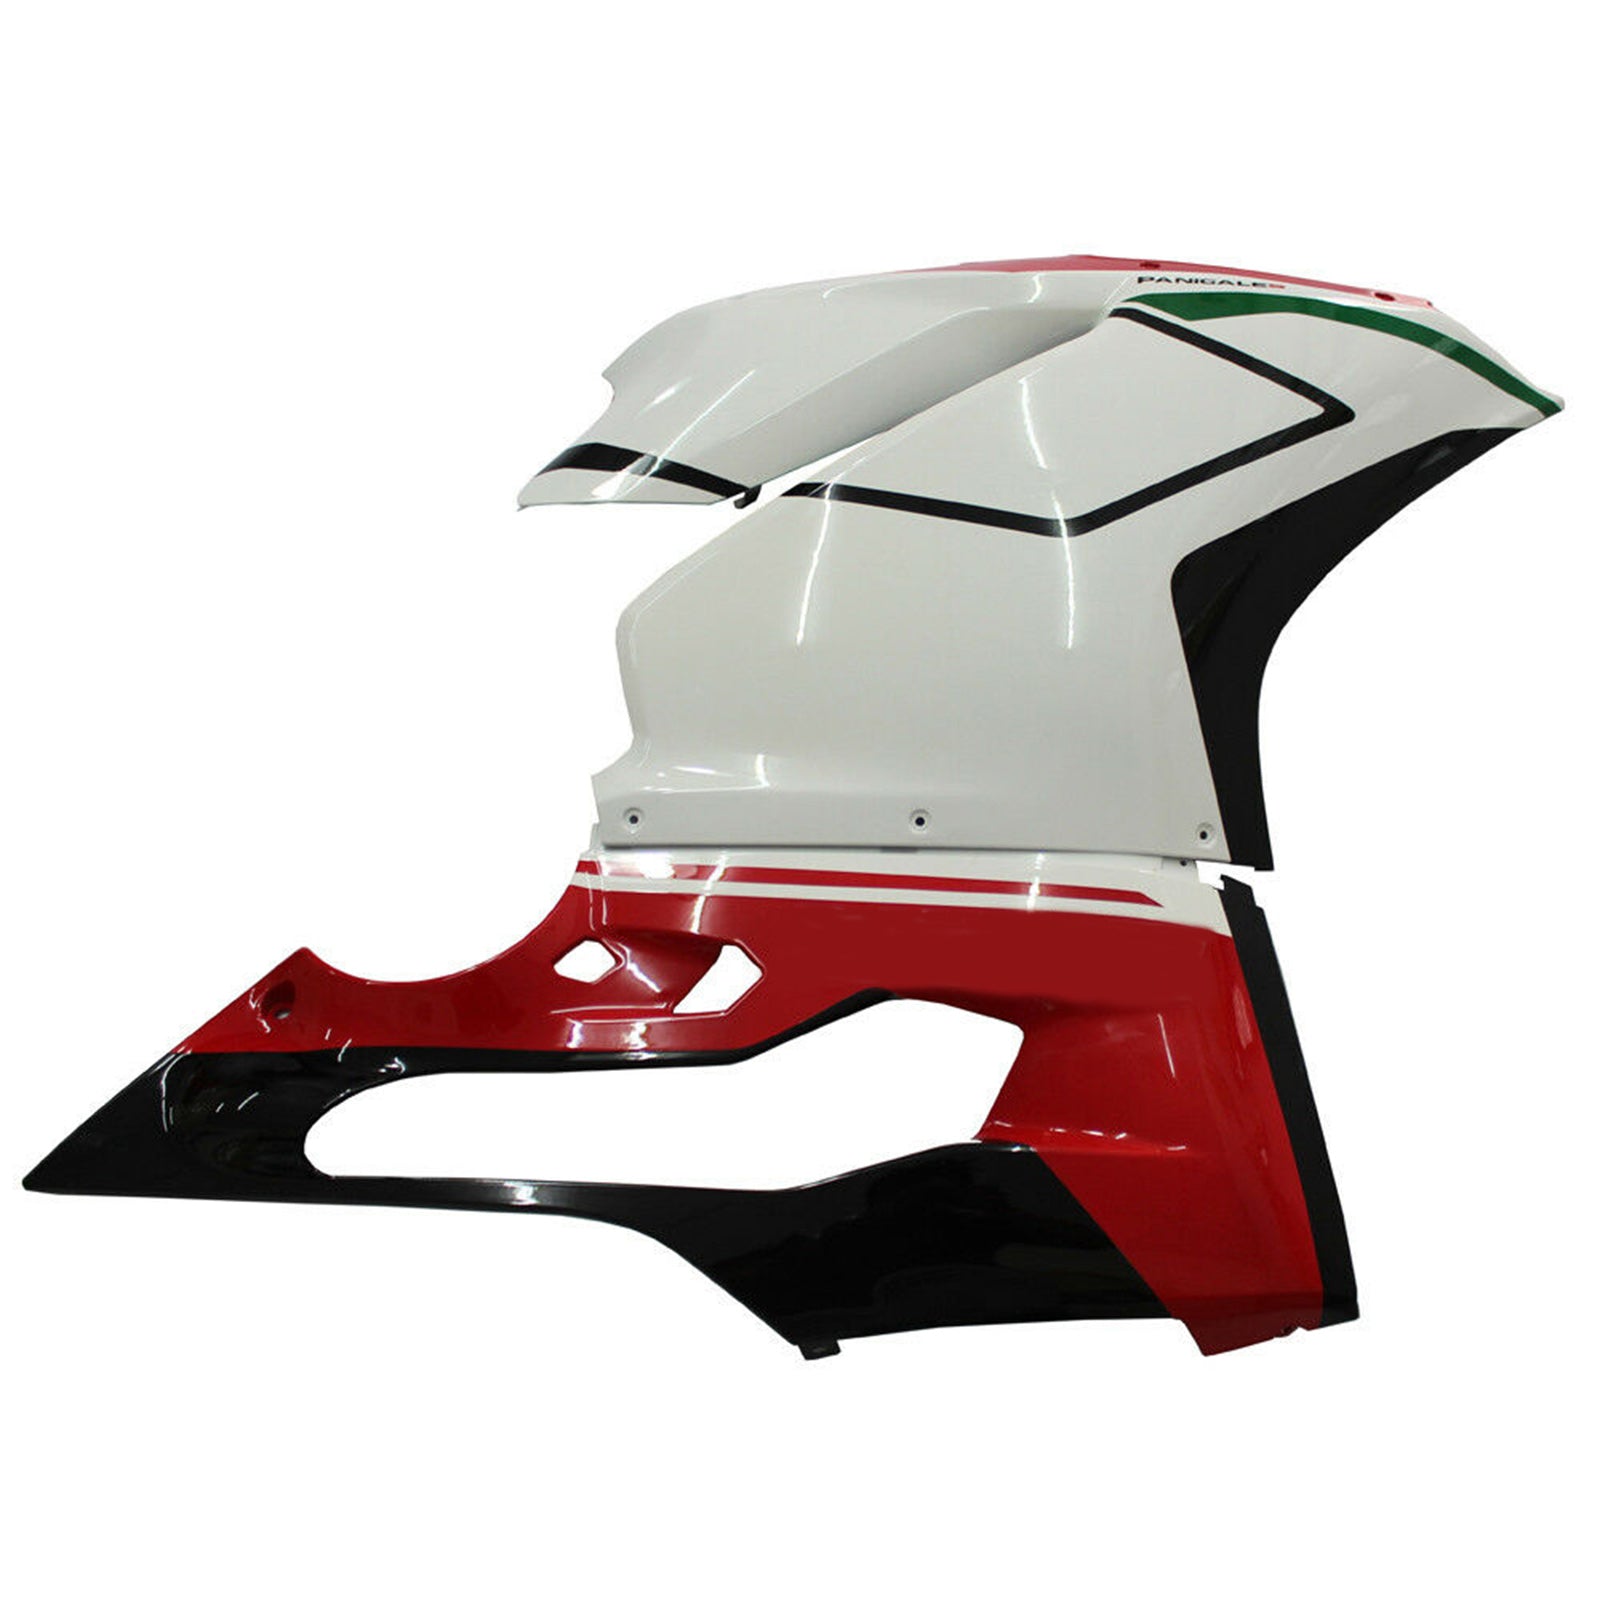 Amotopart 2015-2020 Ducati 1299 959 red&white Fairing Kit